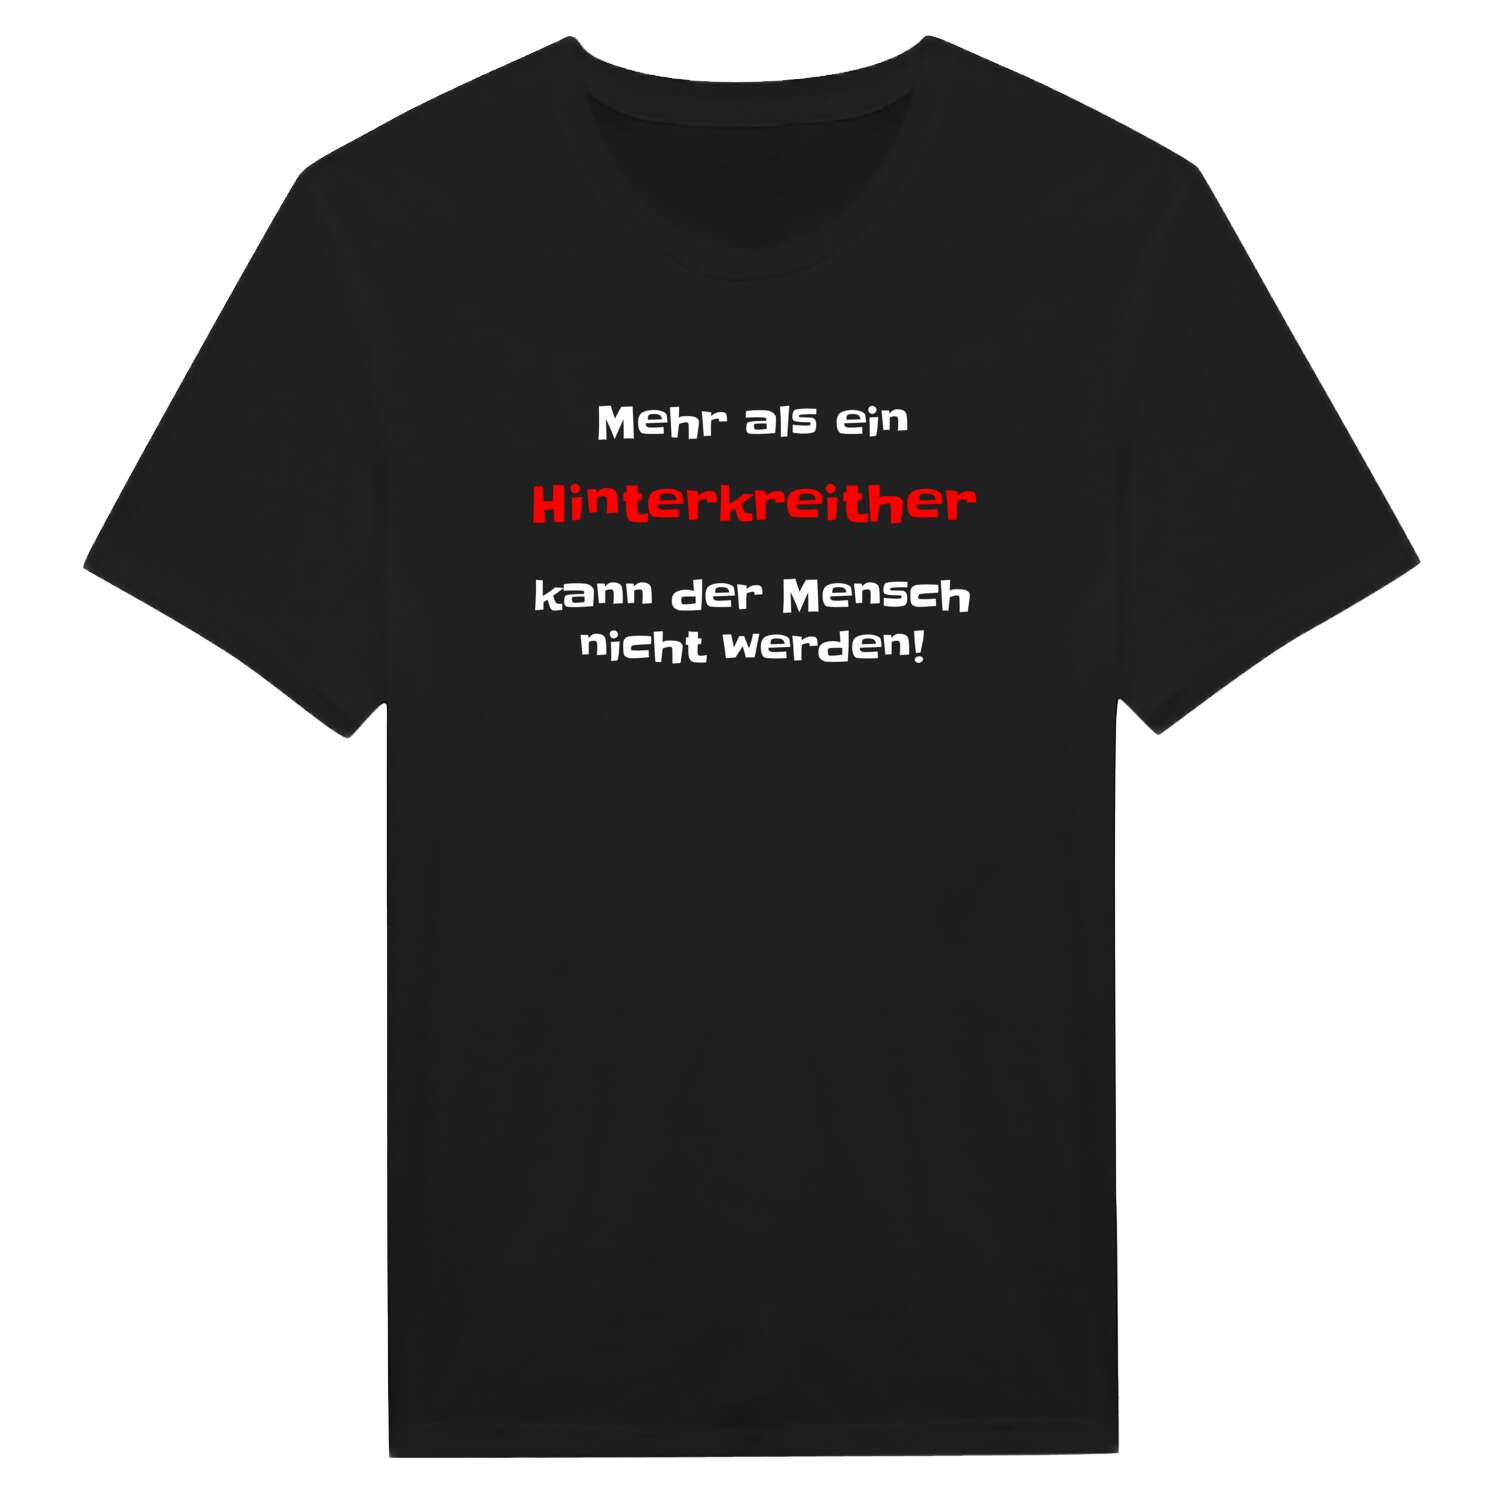 Hinterkreith T-Shirt »Mehr als ein«